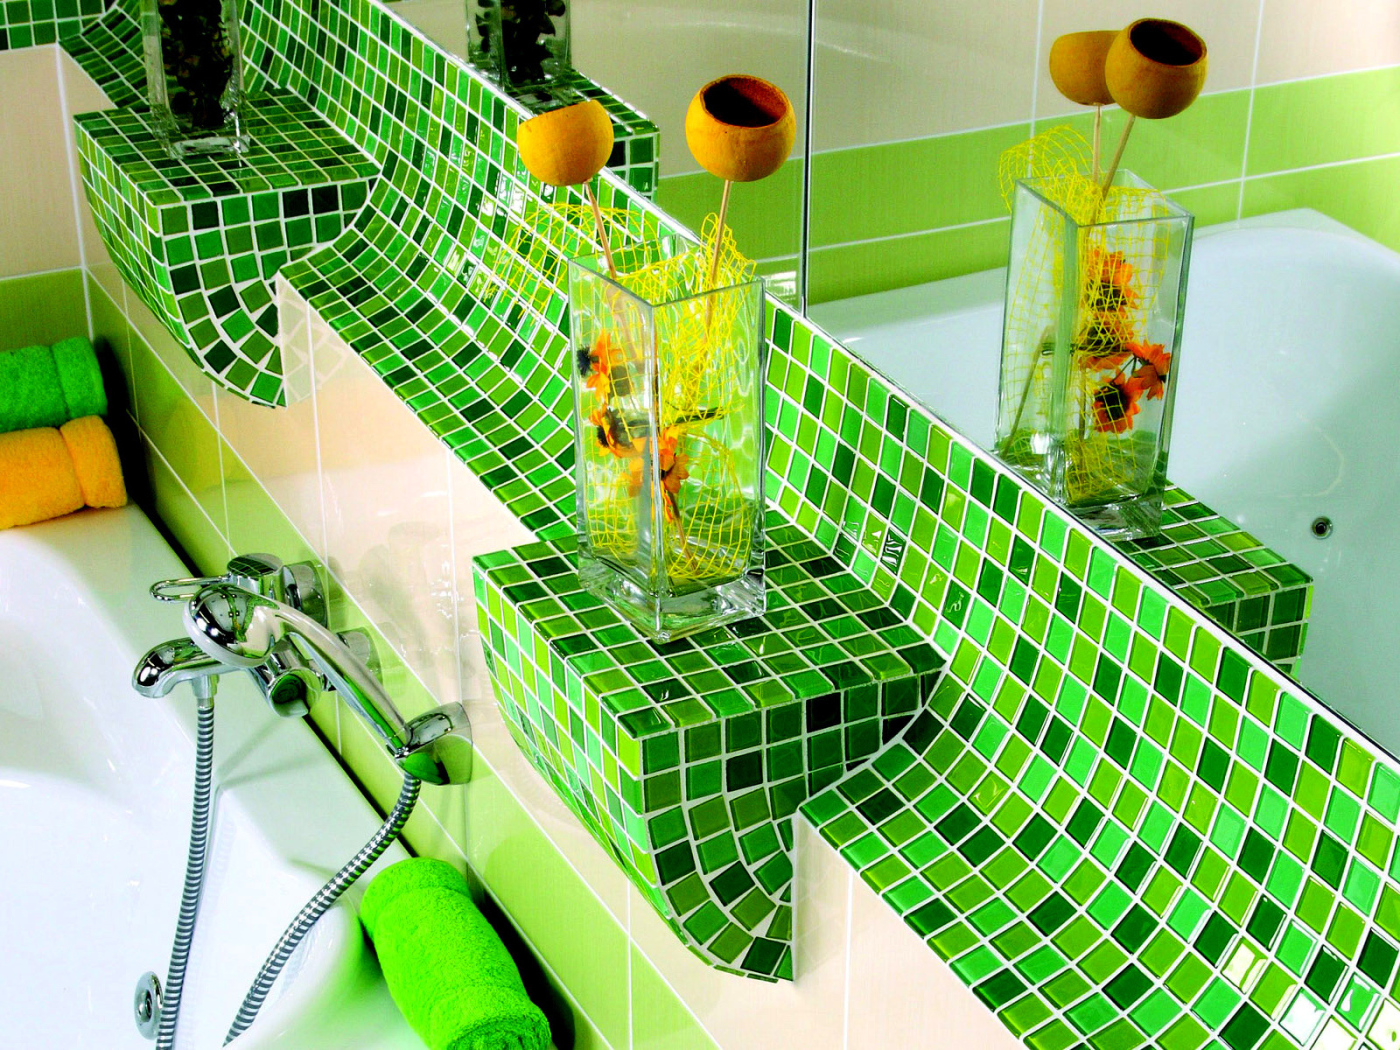 Зеленая плитка в ванной